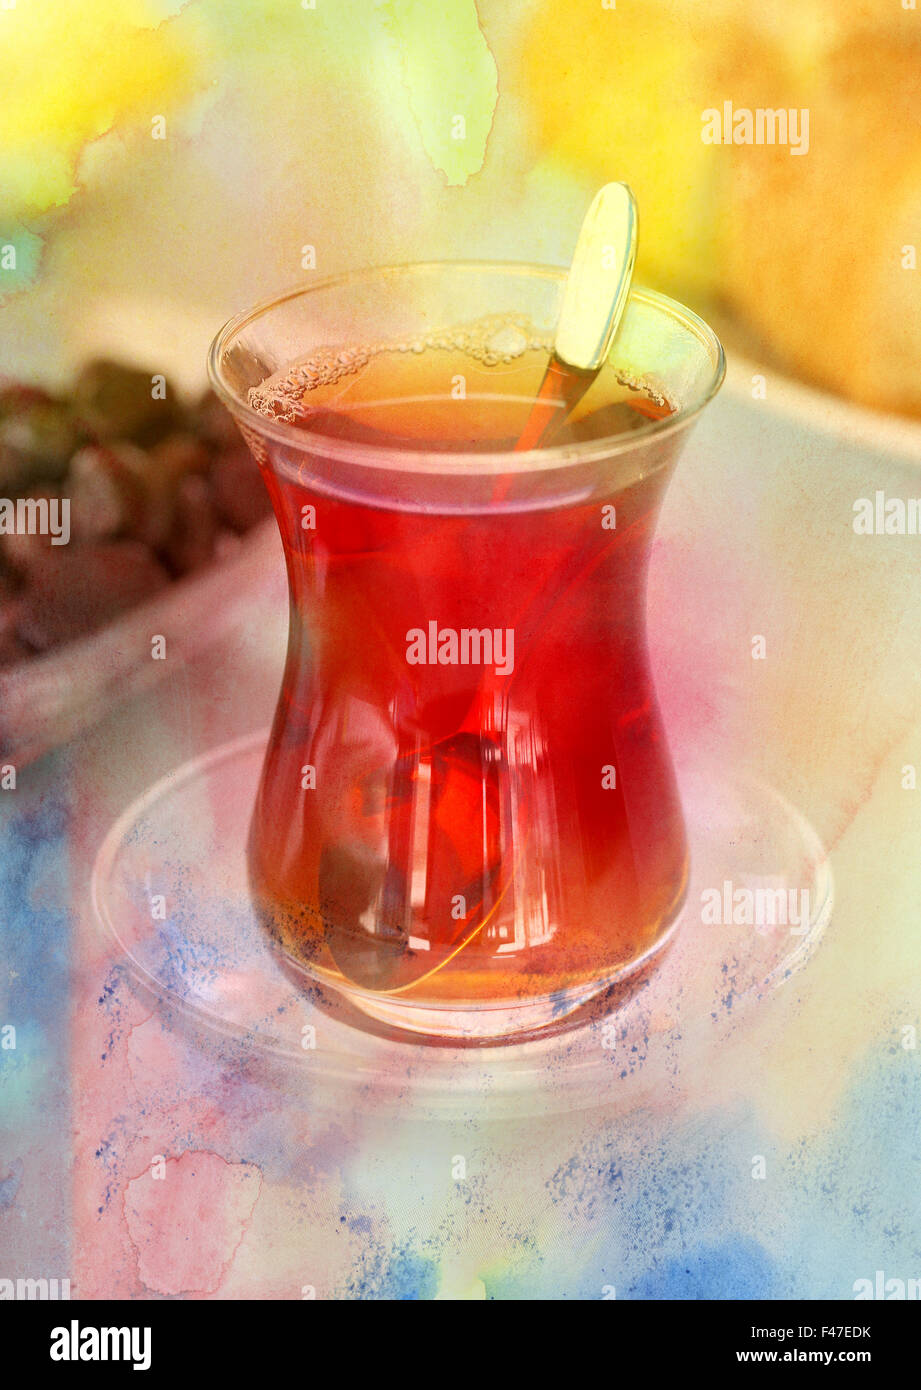 Délicieux thé turc dans une tasse avec un fond abstrait Banque D'Images